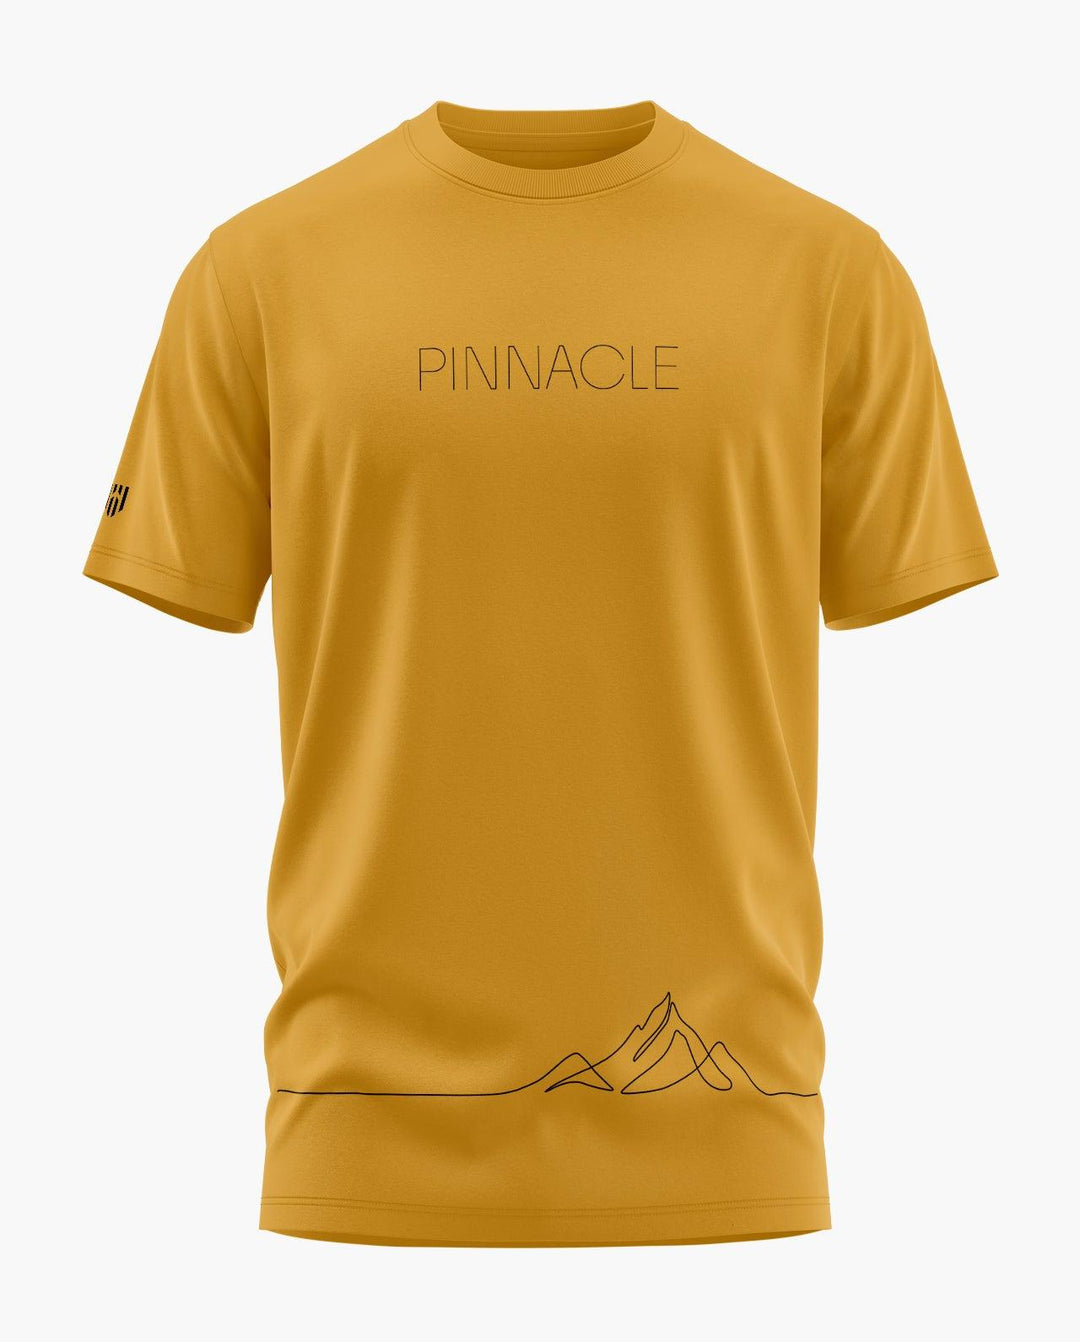 PINNACLE T-Shirt - Aero Armour